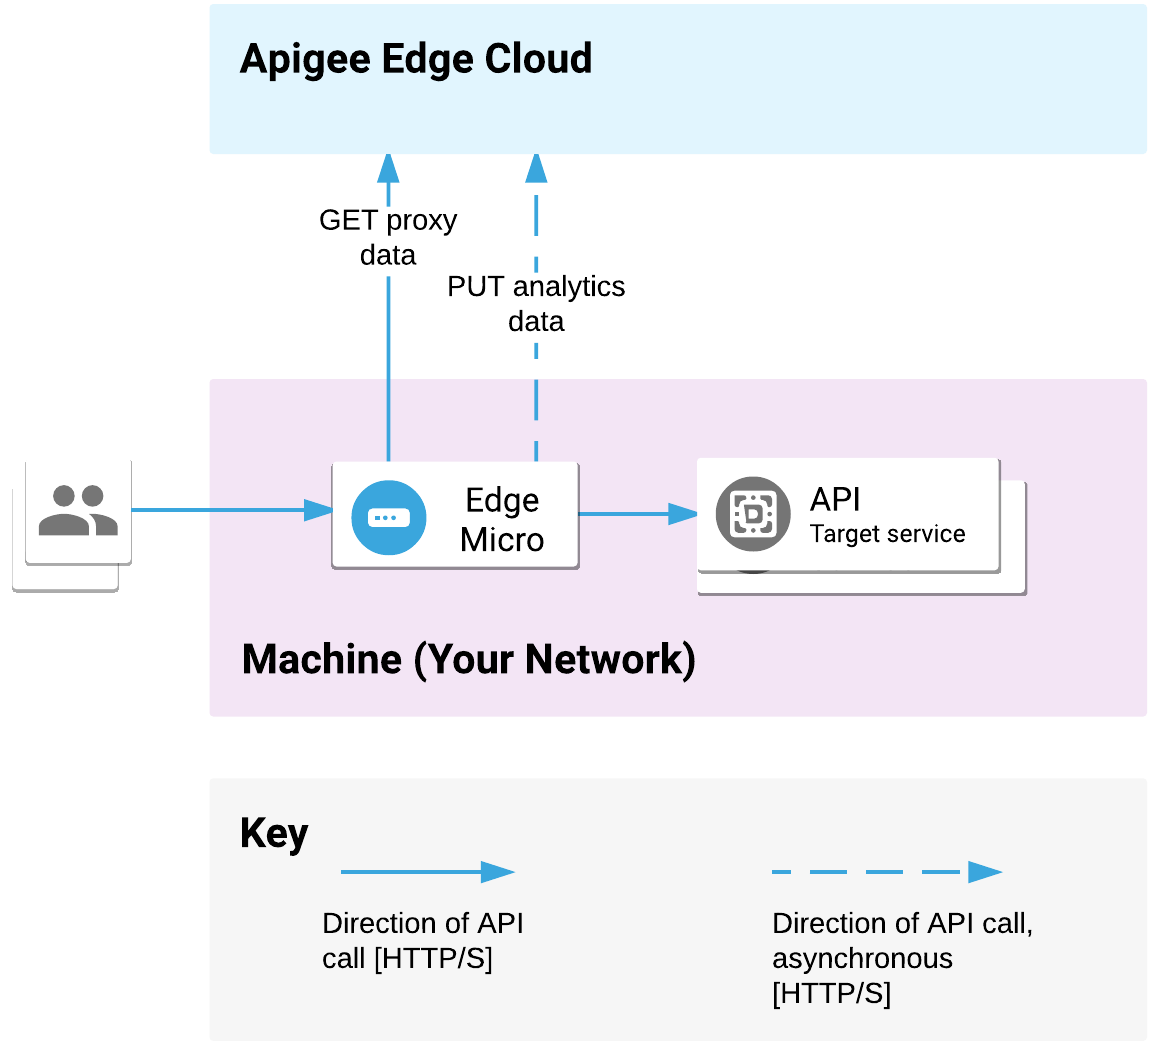 Mikrobrama brzegowa jest wdrożona w Twojej sieci. Przetwarza żądania do interfejsu API od klientów i wywołuje usługi docelowe. Mikrobrama komunikuje dane serwera proxy i dane analityczne z Apigee Edge Cloud.